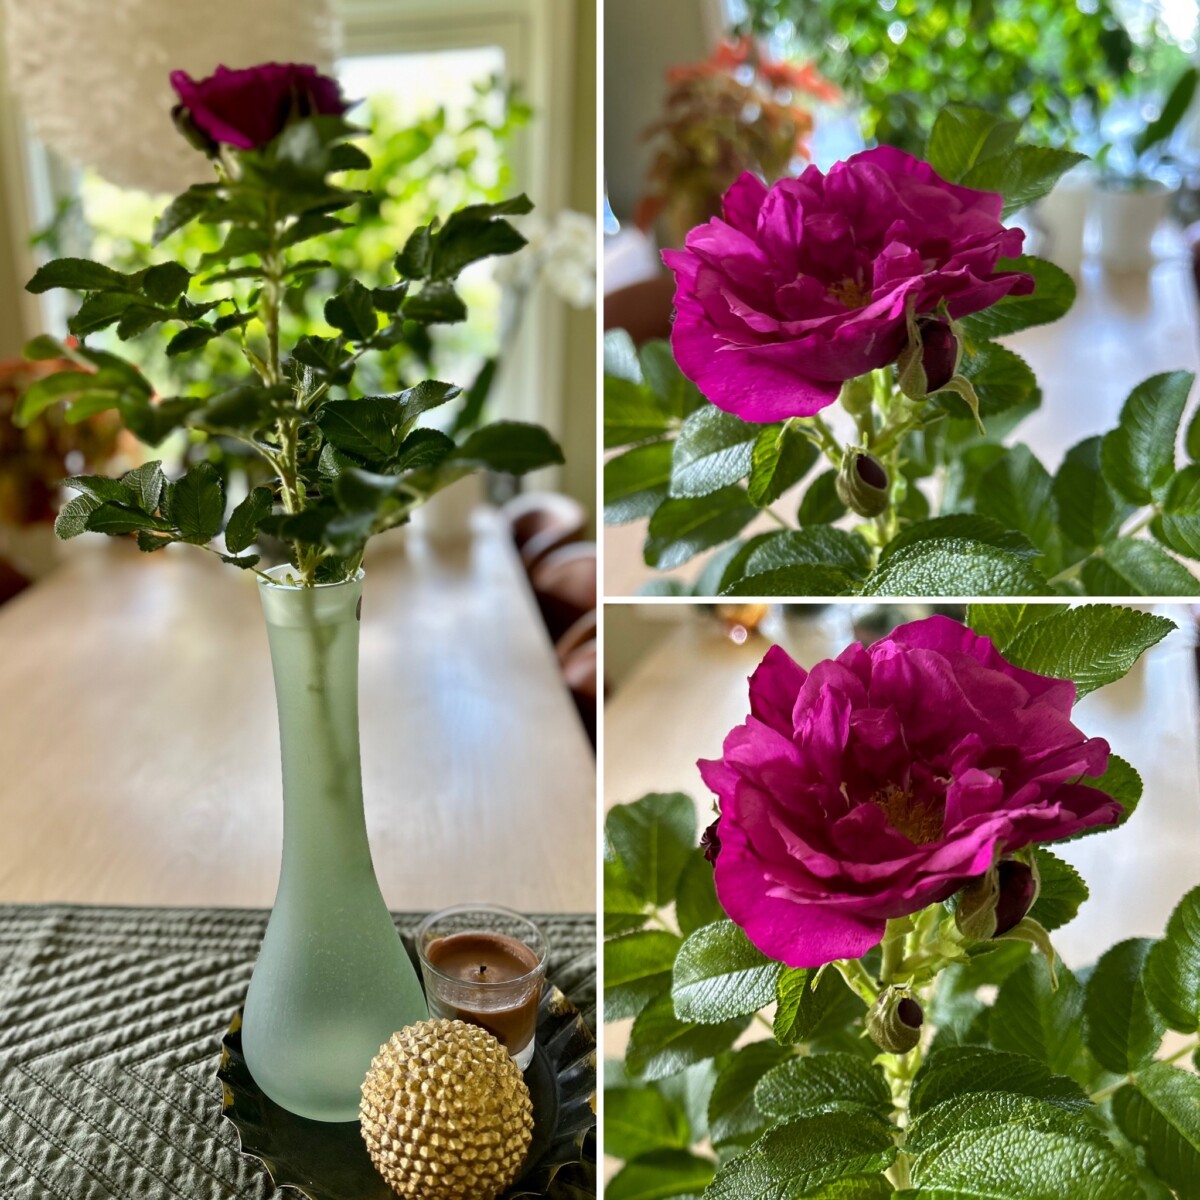 Rynkerose, nyperose, rosa rugosa tatt inn som snitt snittblomst grønn vase